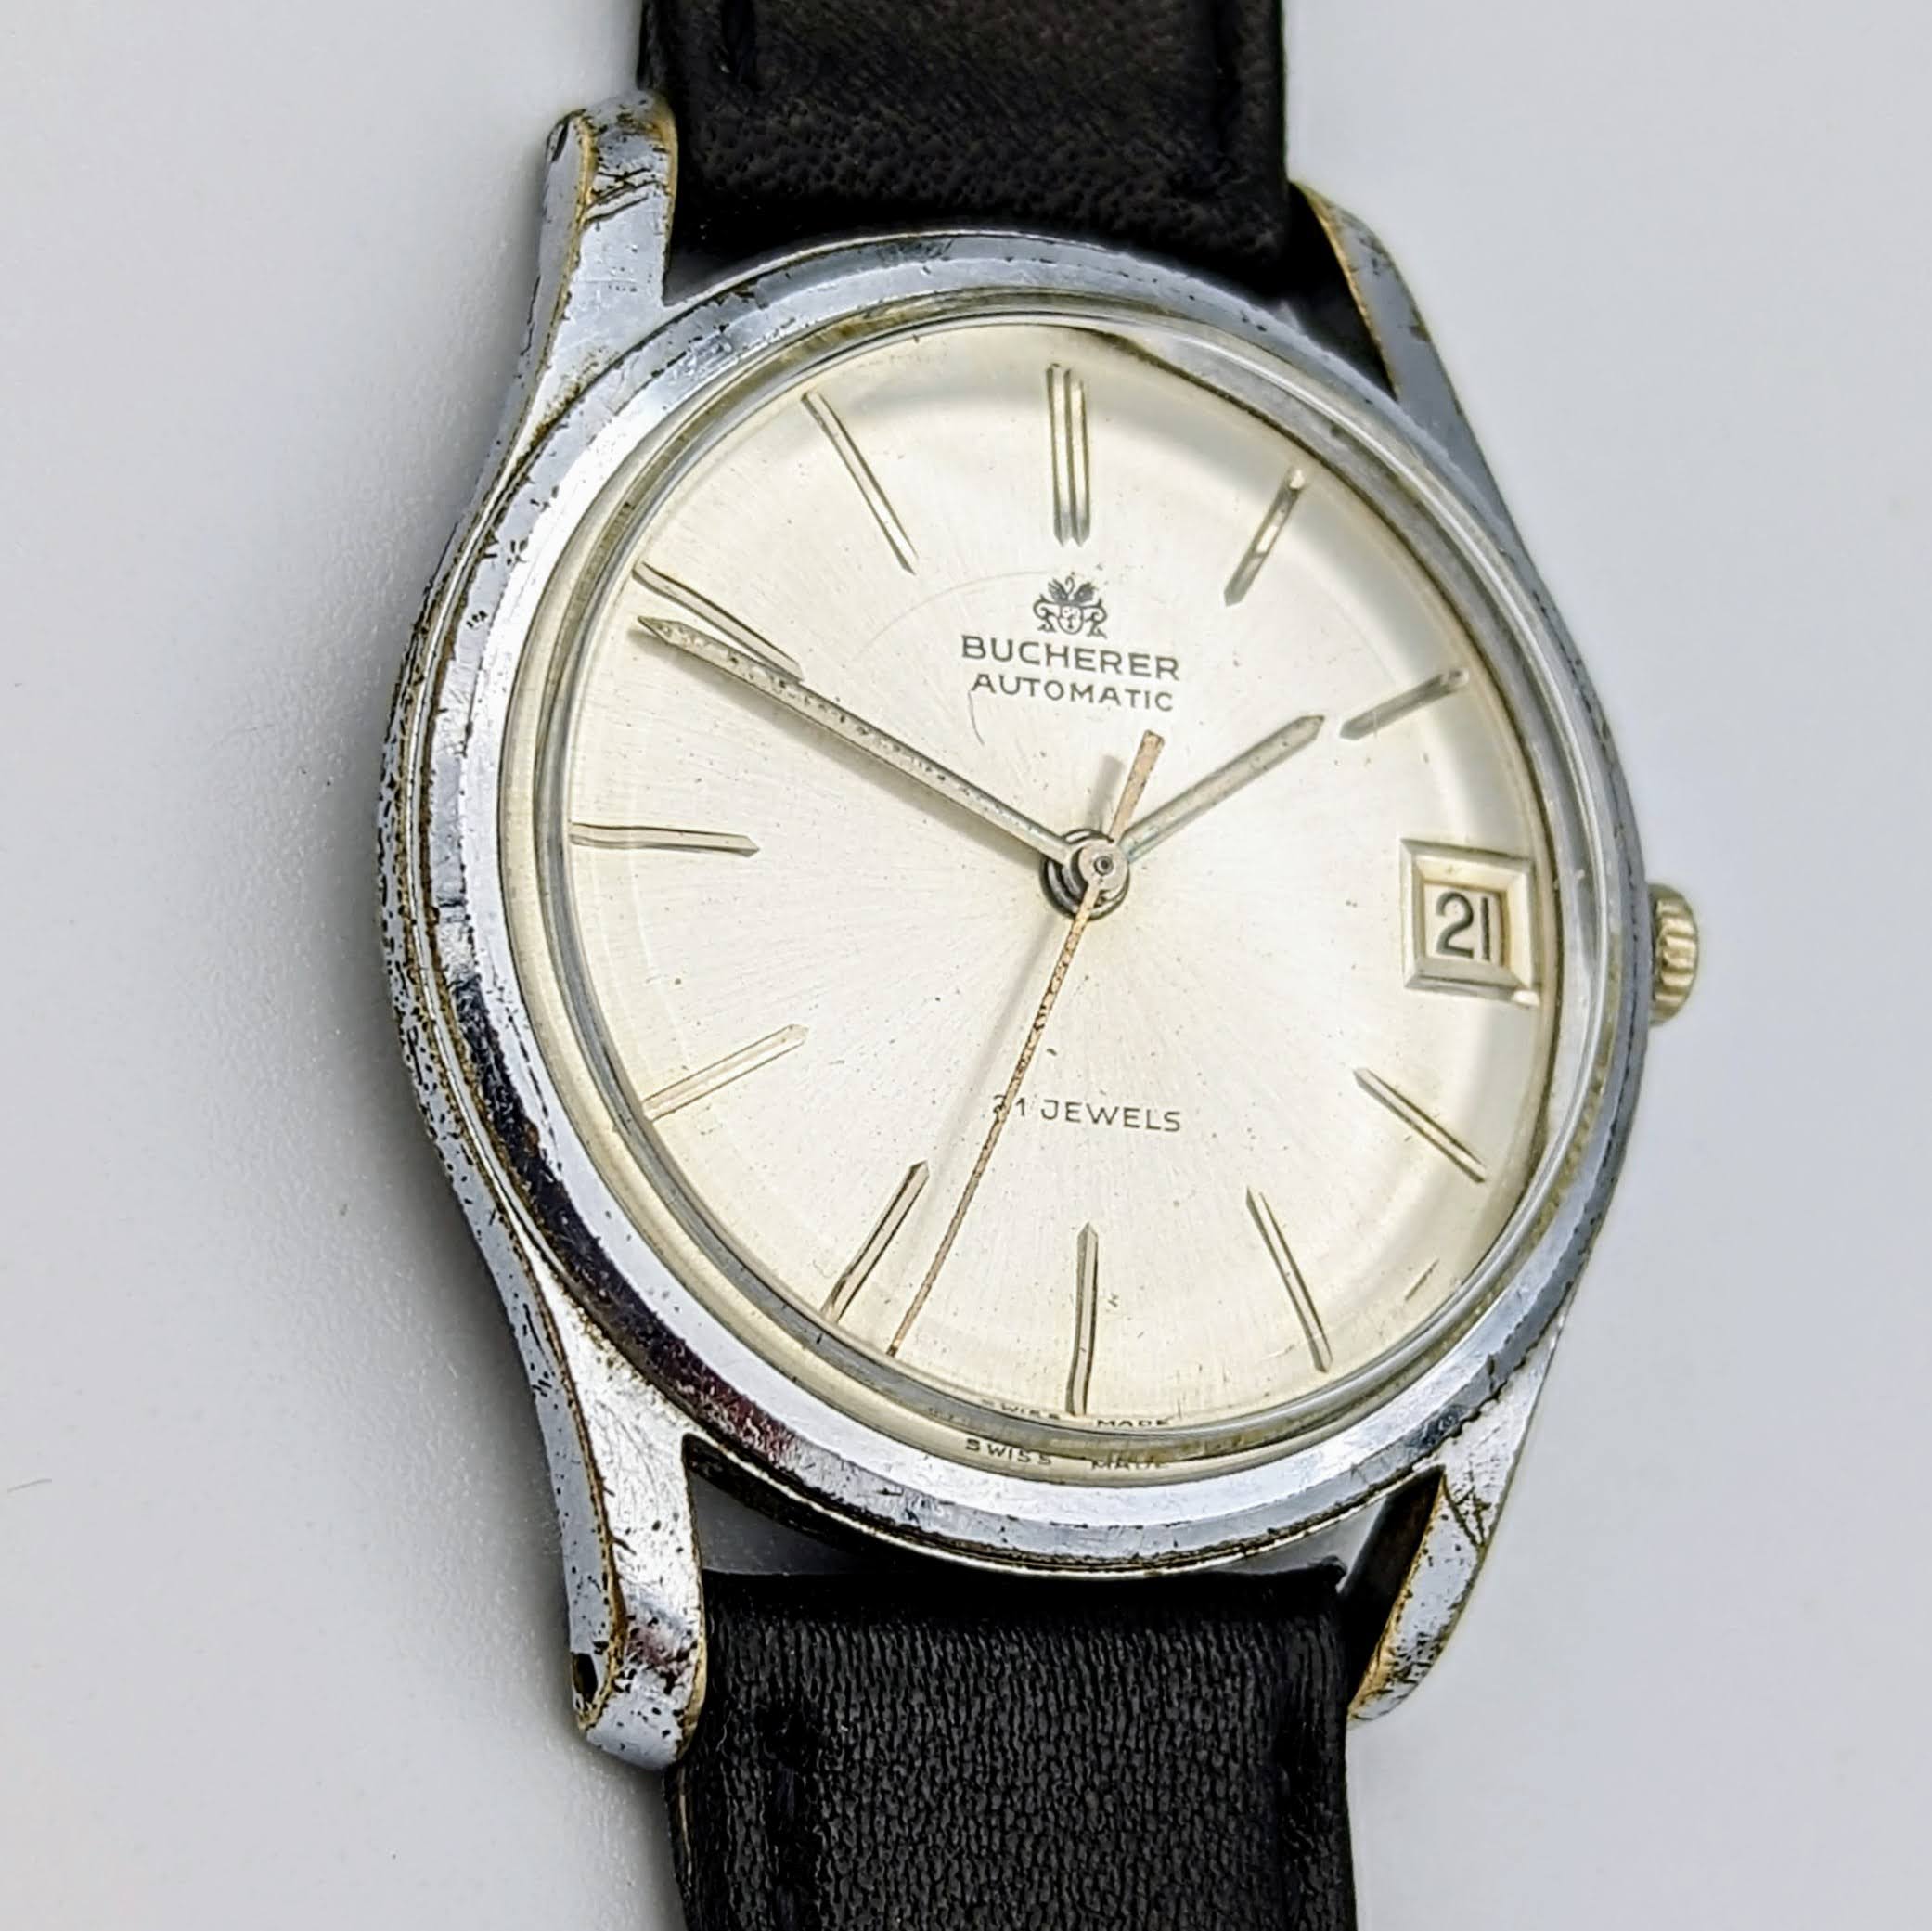 BUCHERER Automatic Watch 21 Jewels 4 ADJs Swiss Wristwatch